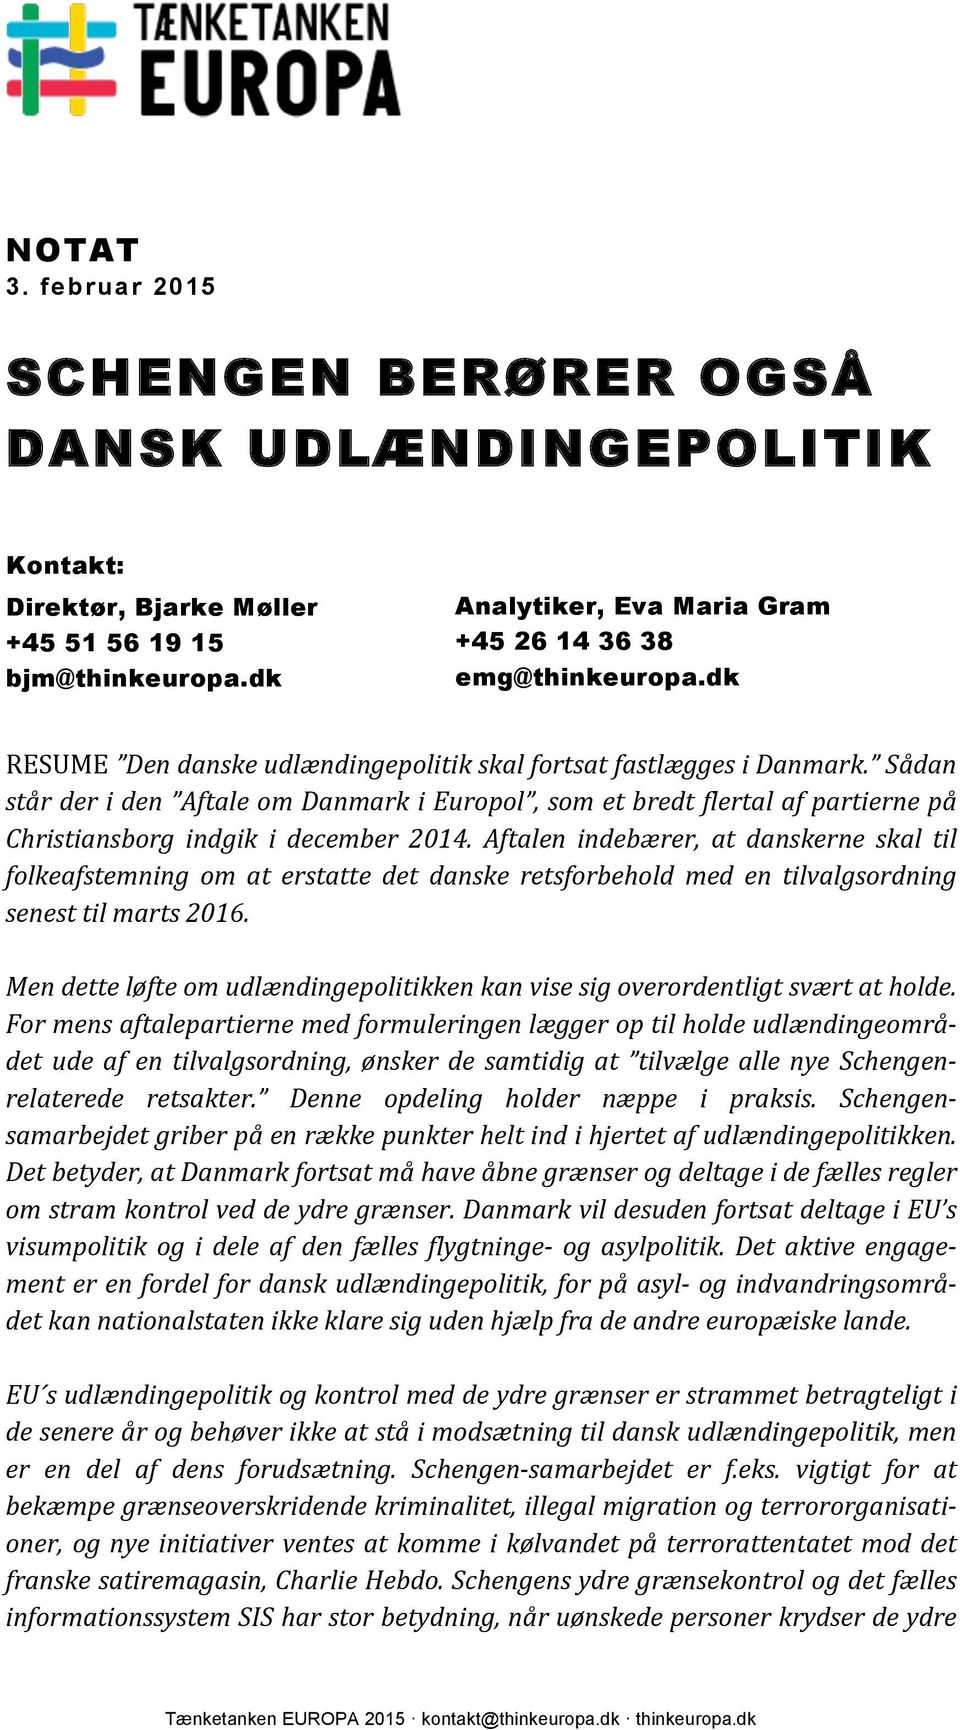 Aftalen indebærer, at danskerne skal til folkeafstemning om at erstatte det danske retsforbehold med en tilvalgsordning senest til marts 2016.